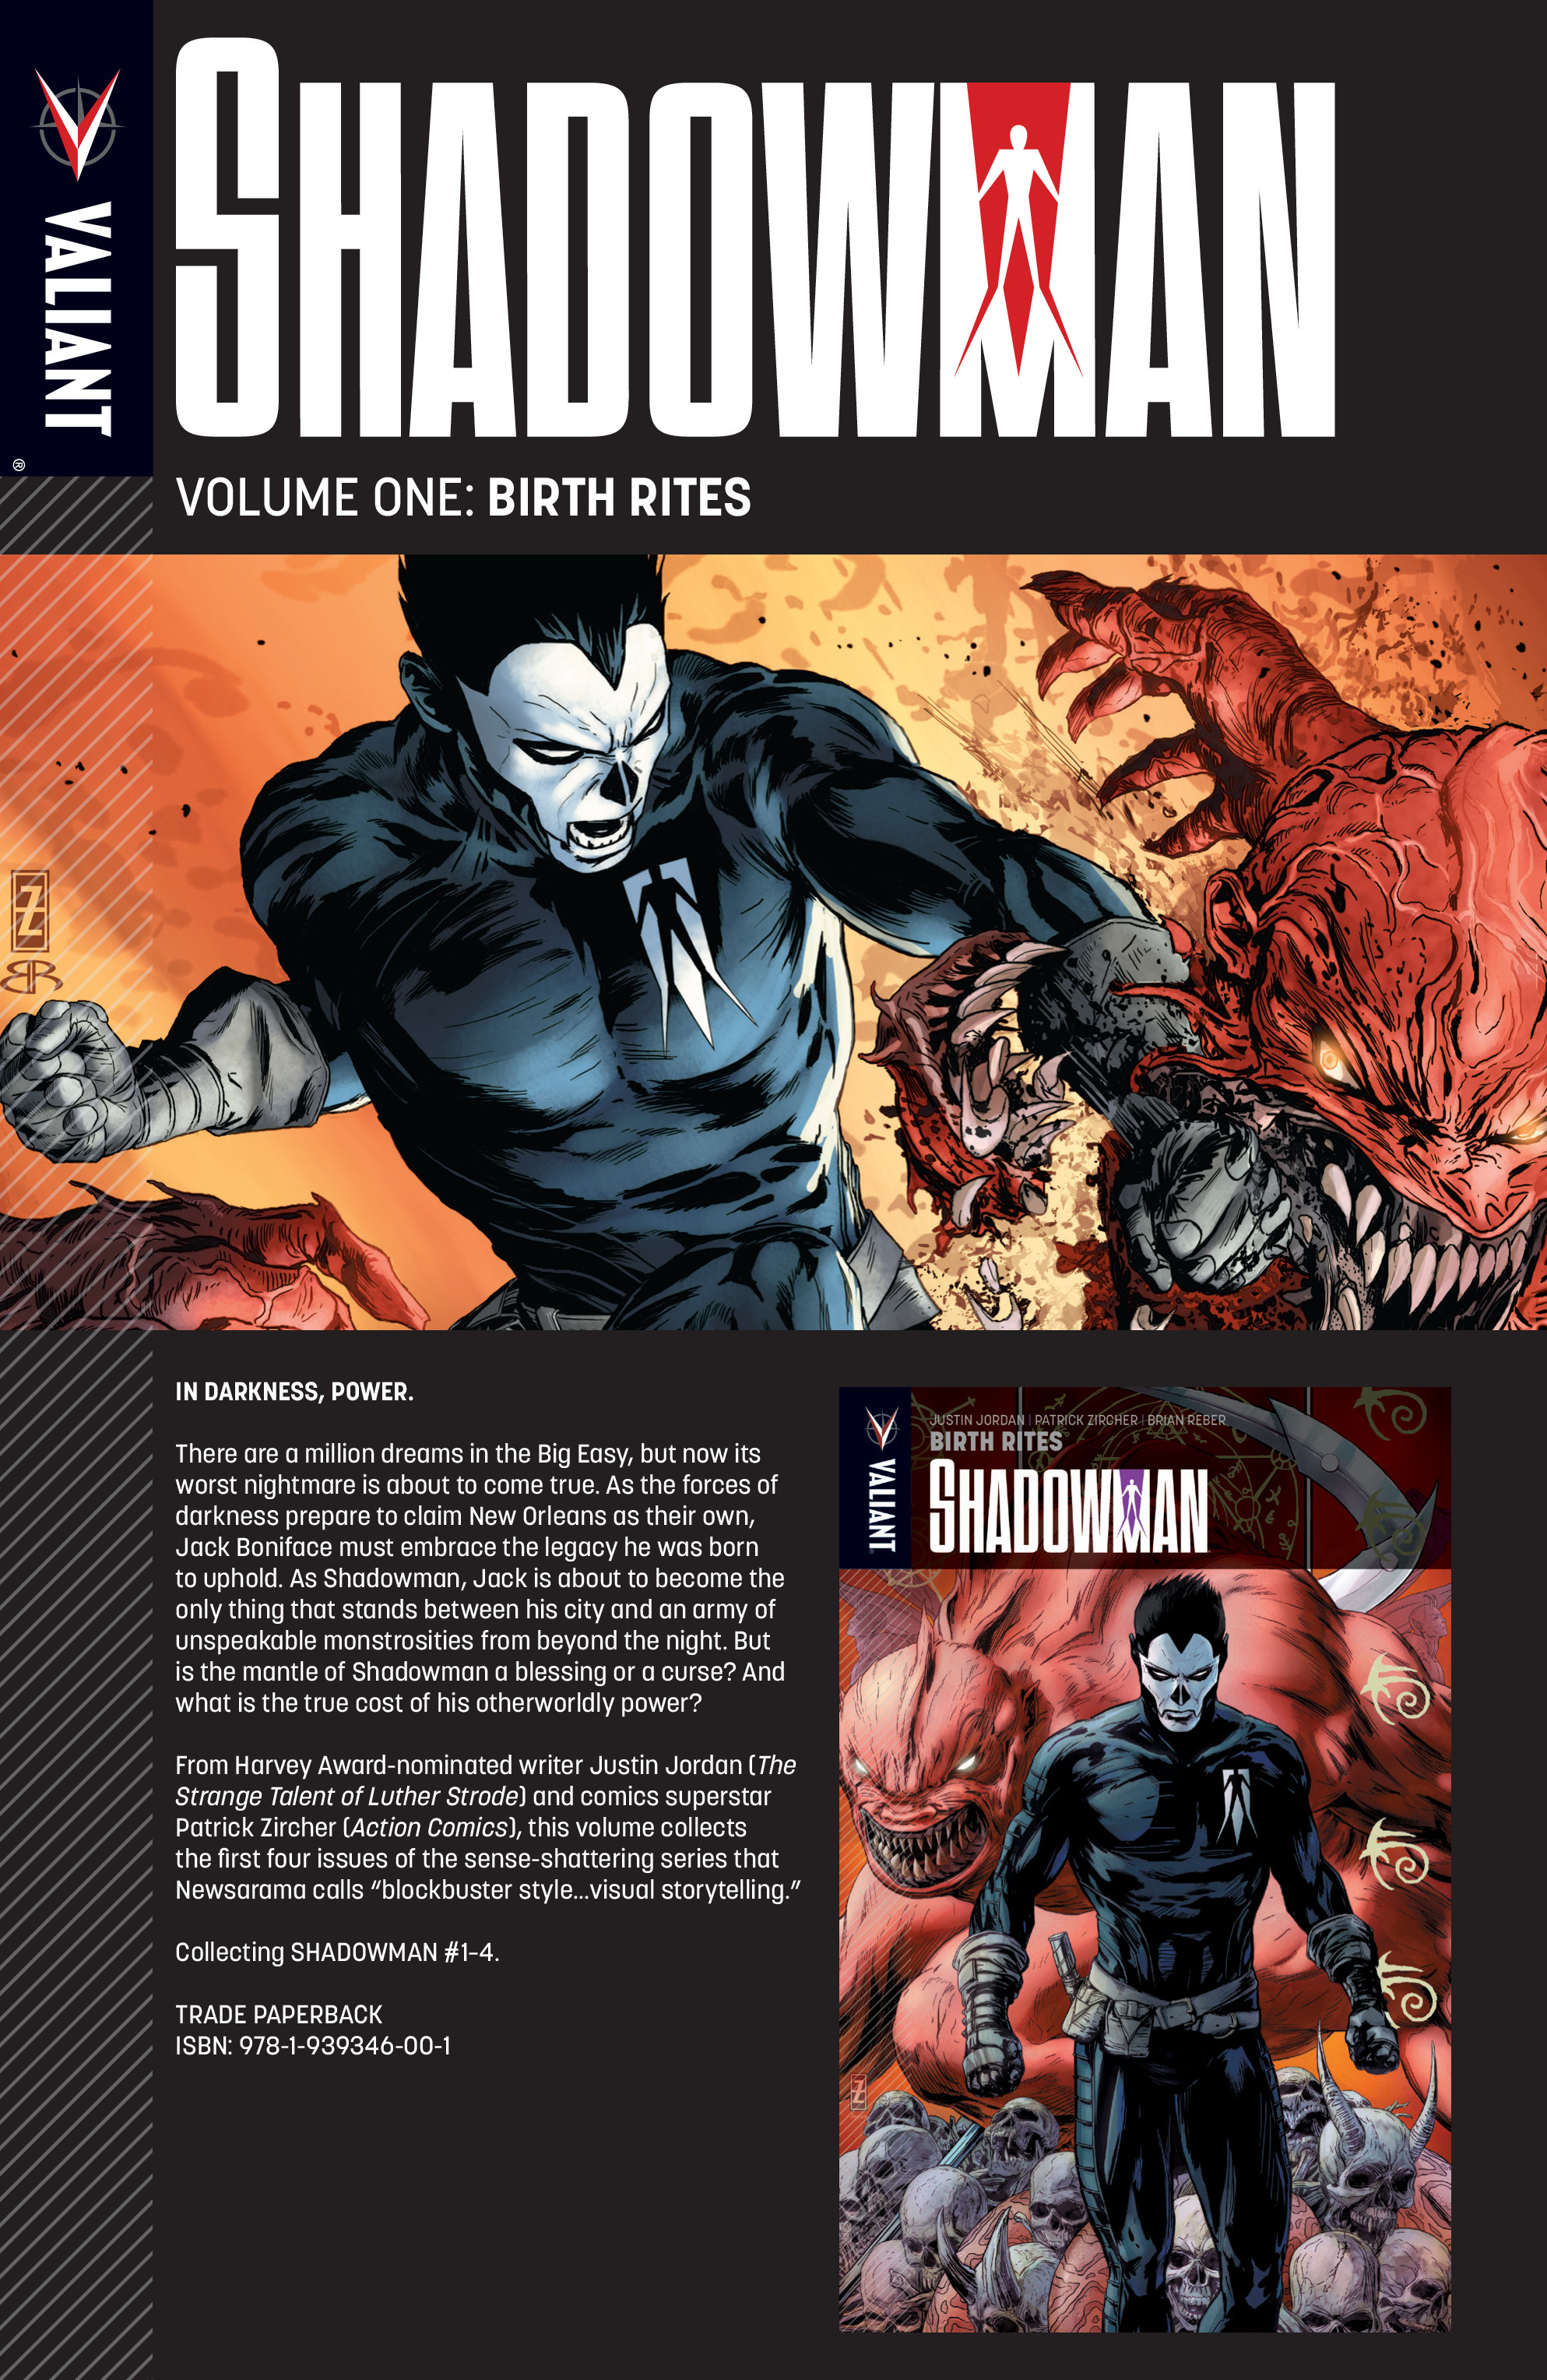 Read online Shadowman by Garth Ennis & Ashley Wood comic -  Issue # TPB - 192